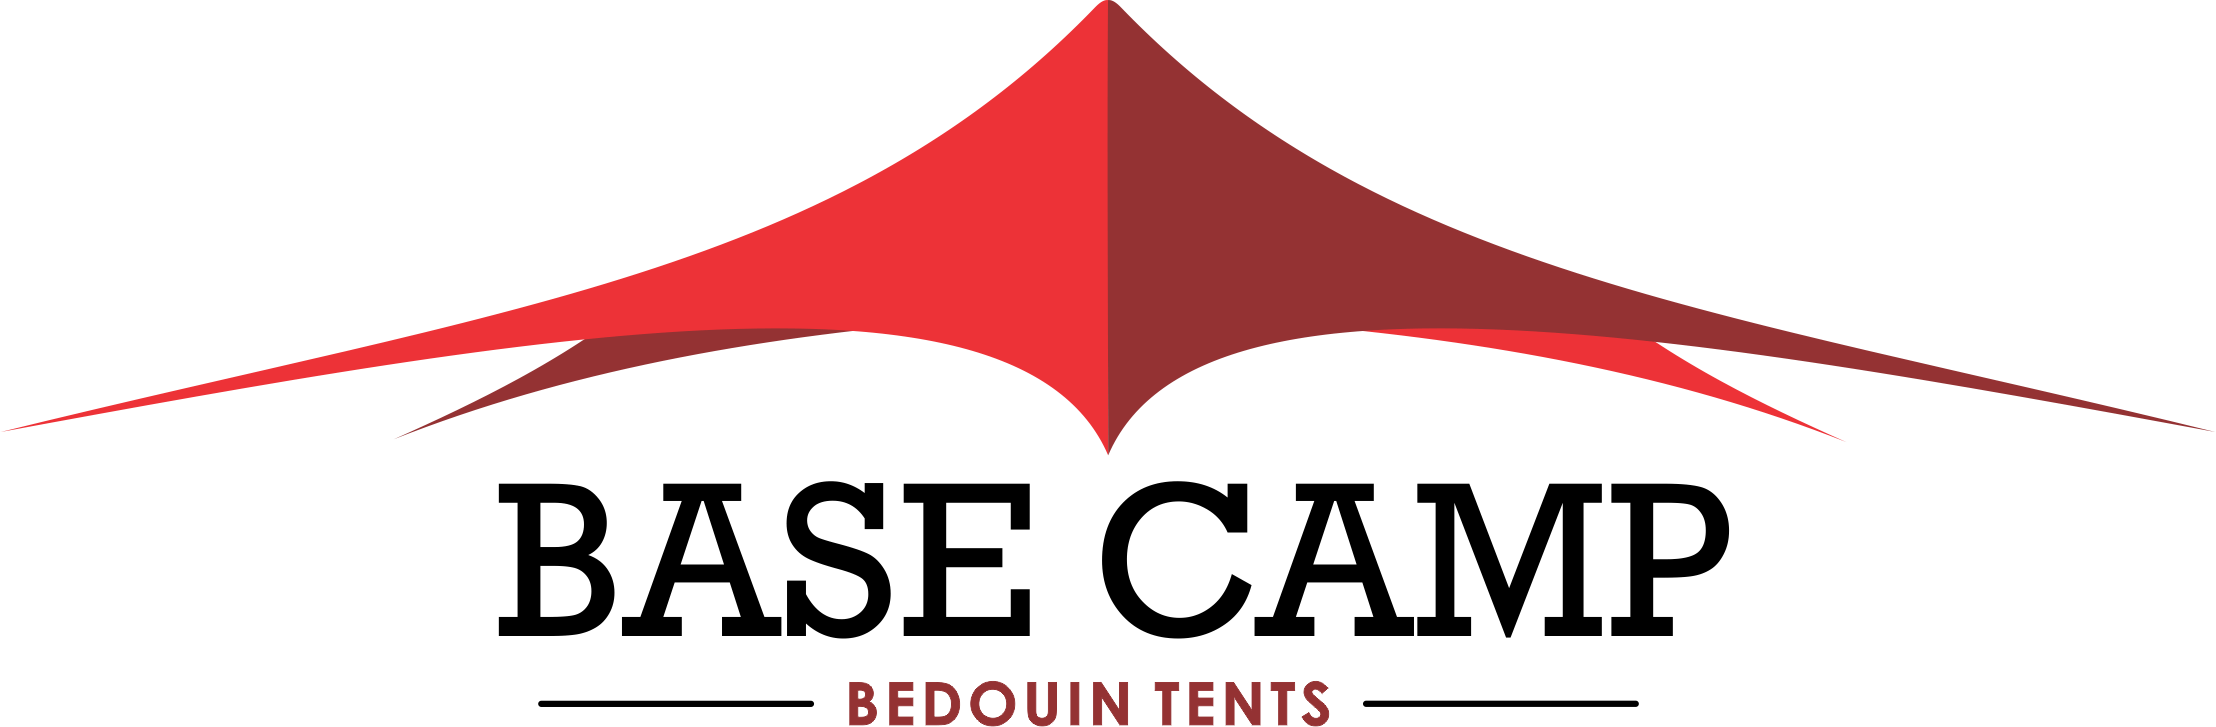 Tent Logo - Basecamp Tents